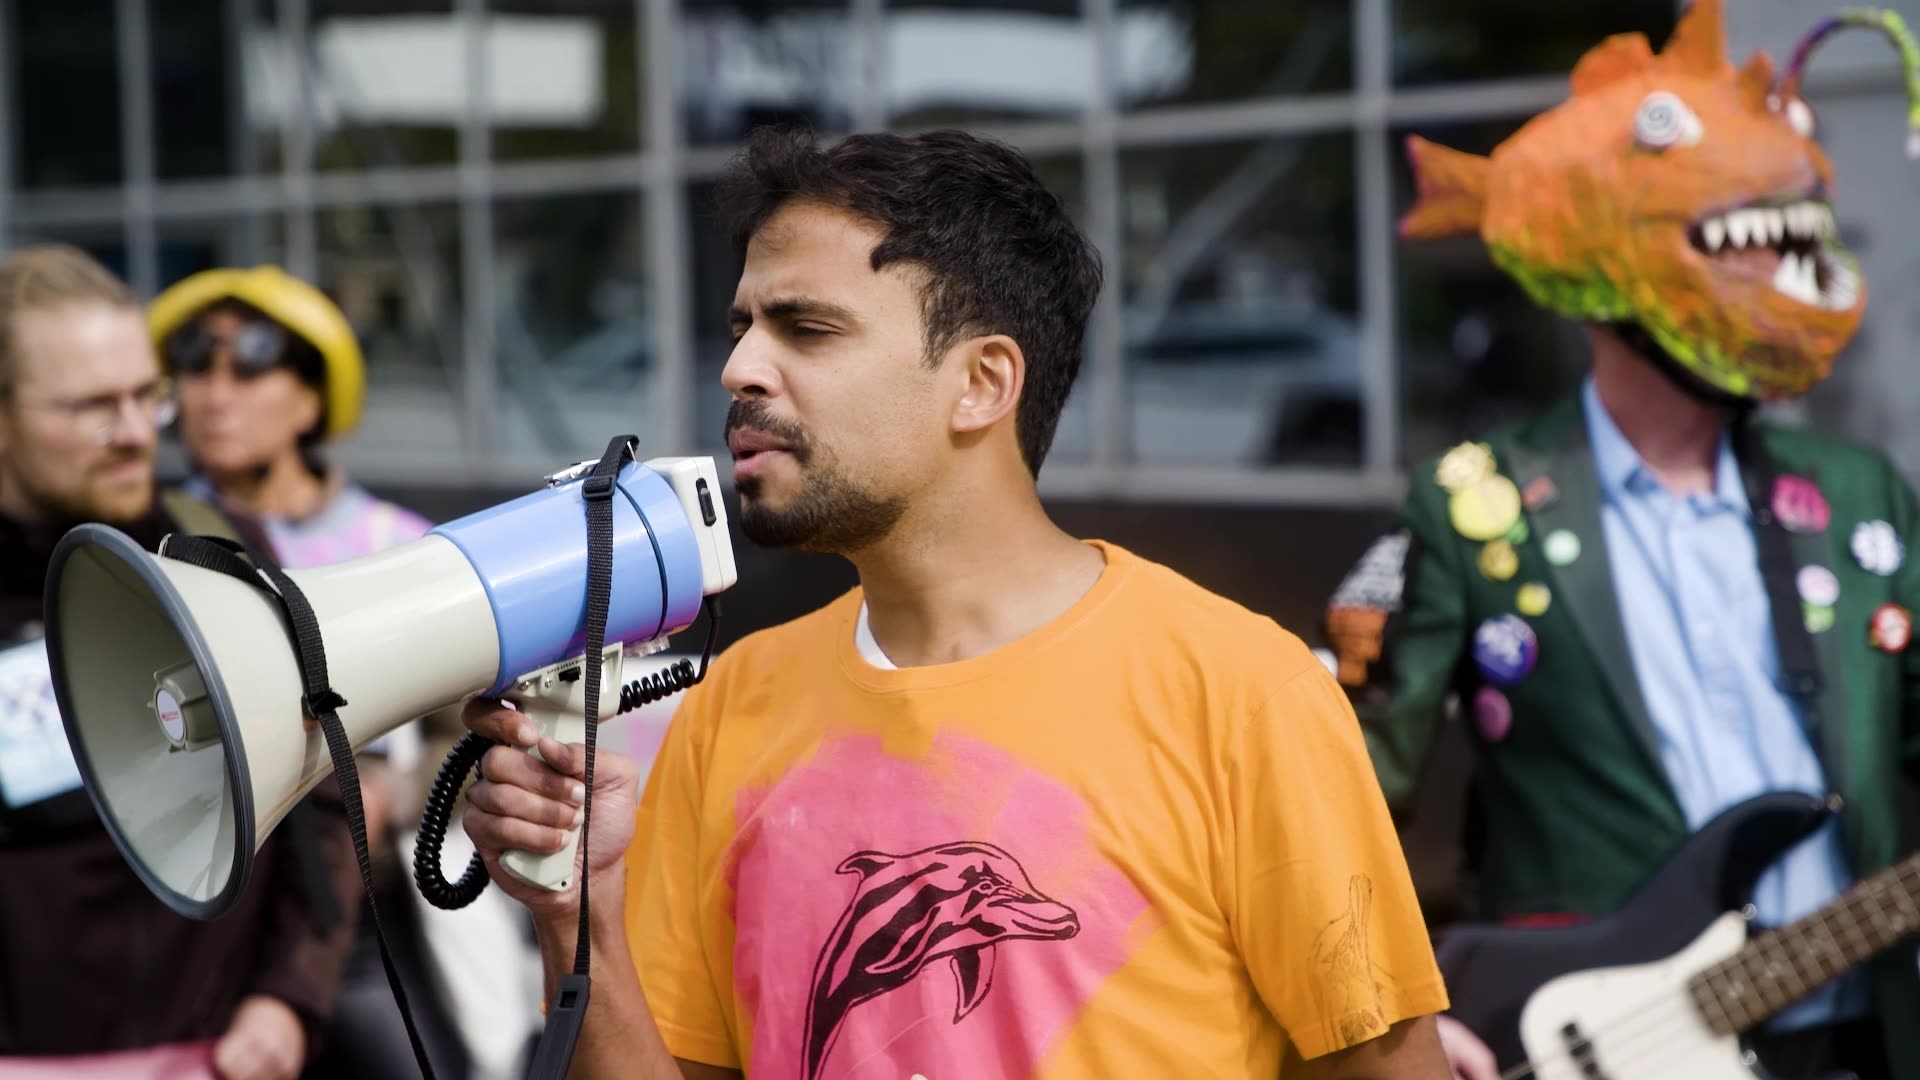 Afbeelding van Aaron (31) is klimaatactivist: ‘Ik vind het belangrijk het recht op demonstratie te gebruiken' | Voorvechters